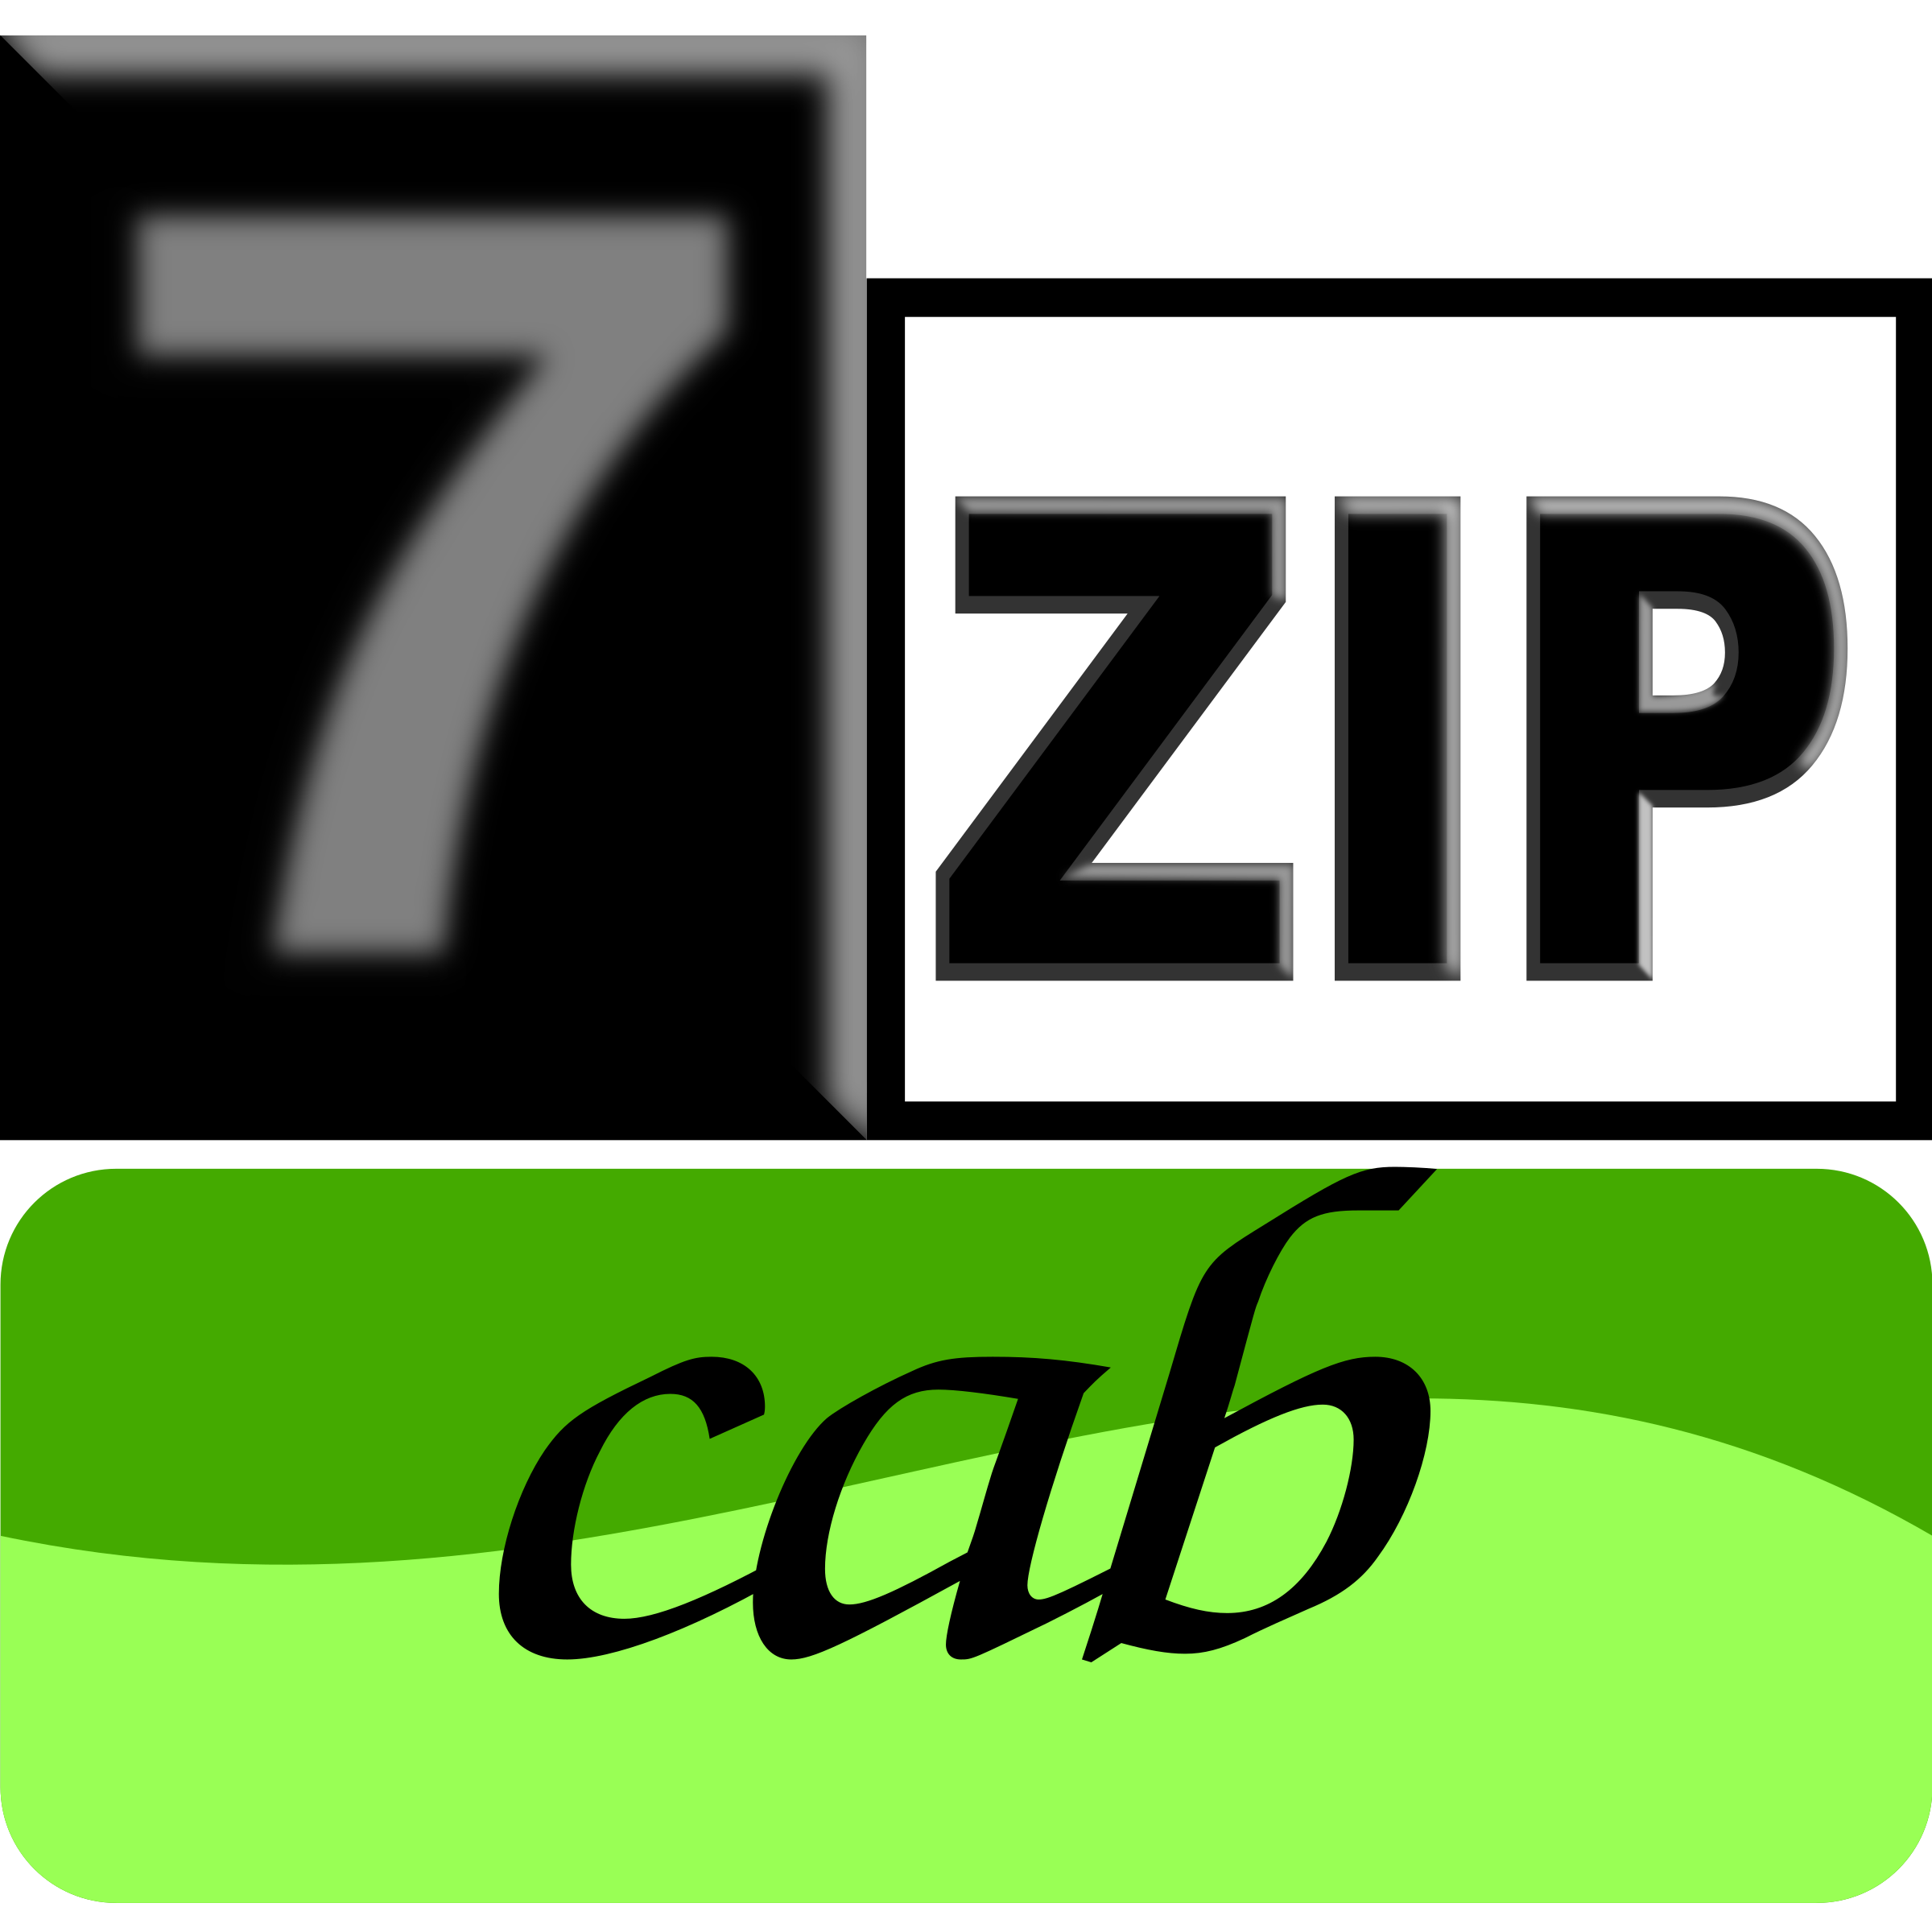 7zipClassic-cab SVG Clip arts